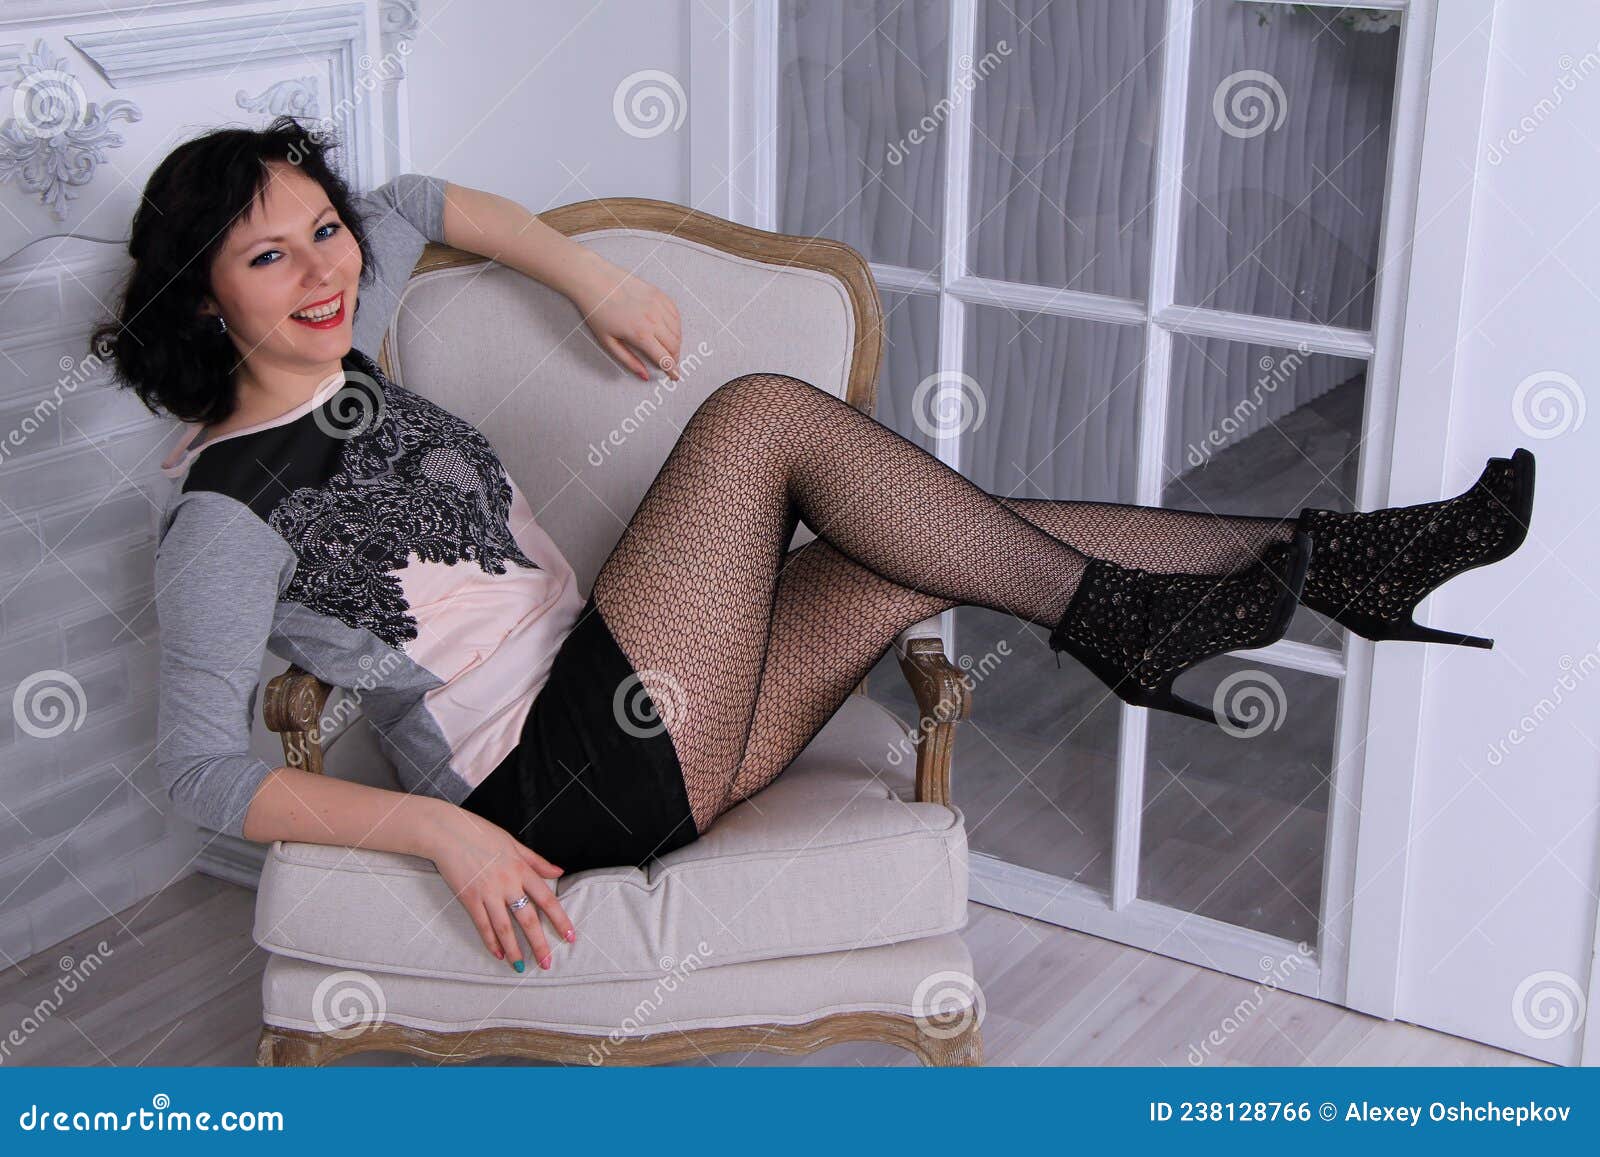 Beautiful Legged Brunette Girl in Black Miniskirt and Black Fishnet  Stockings Posing on Chair Stock Photo - Image of miniskirt, black: 238128766